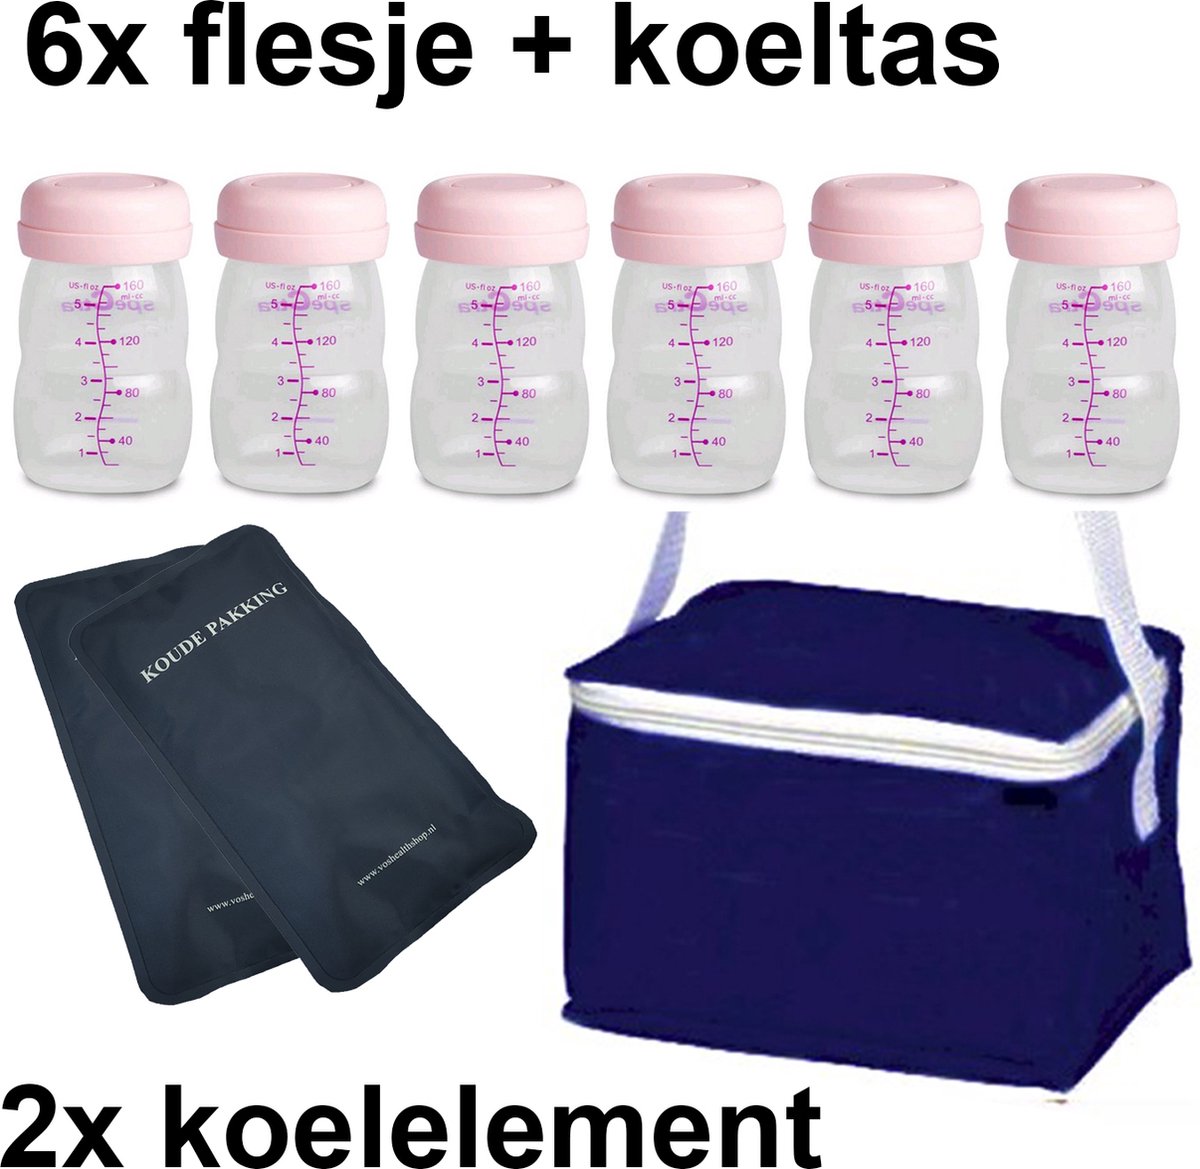 Moedermelk flesjes - 6 x 160ml - met blauw koeltasje en koelelementen - borstvoeding flesjes - BPA vrij